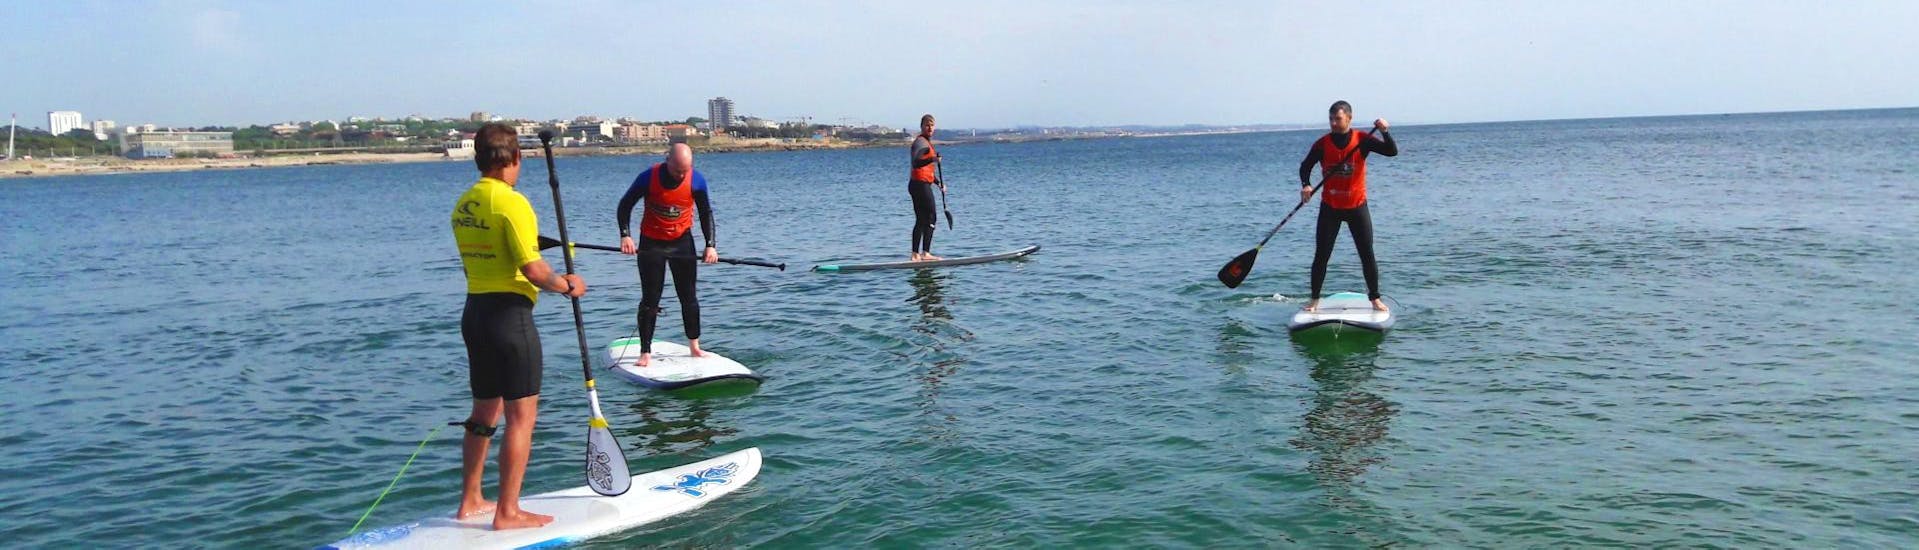 Un grupo de amigos se divierte mientras intentan encontrar el equilibrio arriba de una tabla de SUP durante su curso privado de Paddle Surf organizado por Surfaventura.